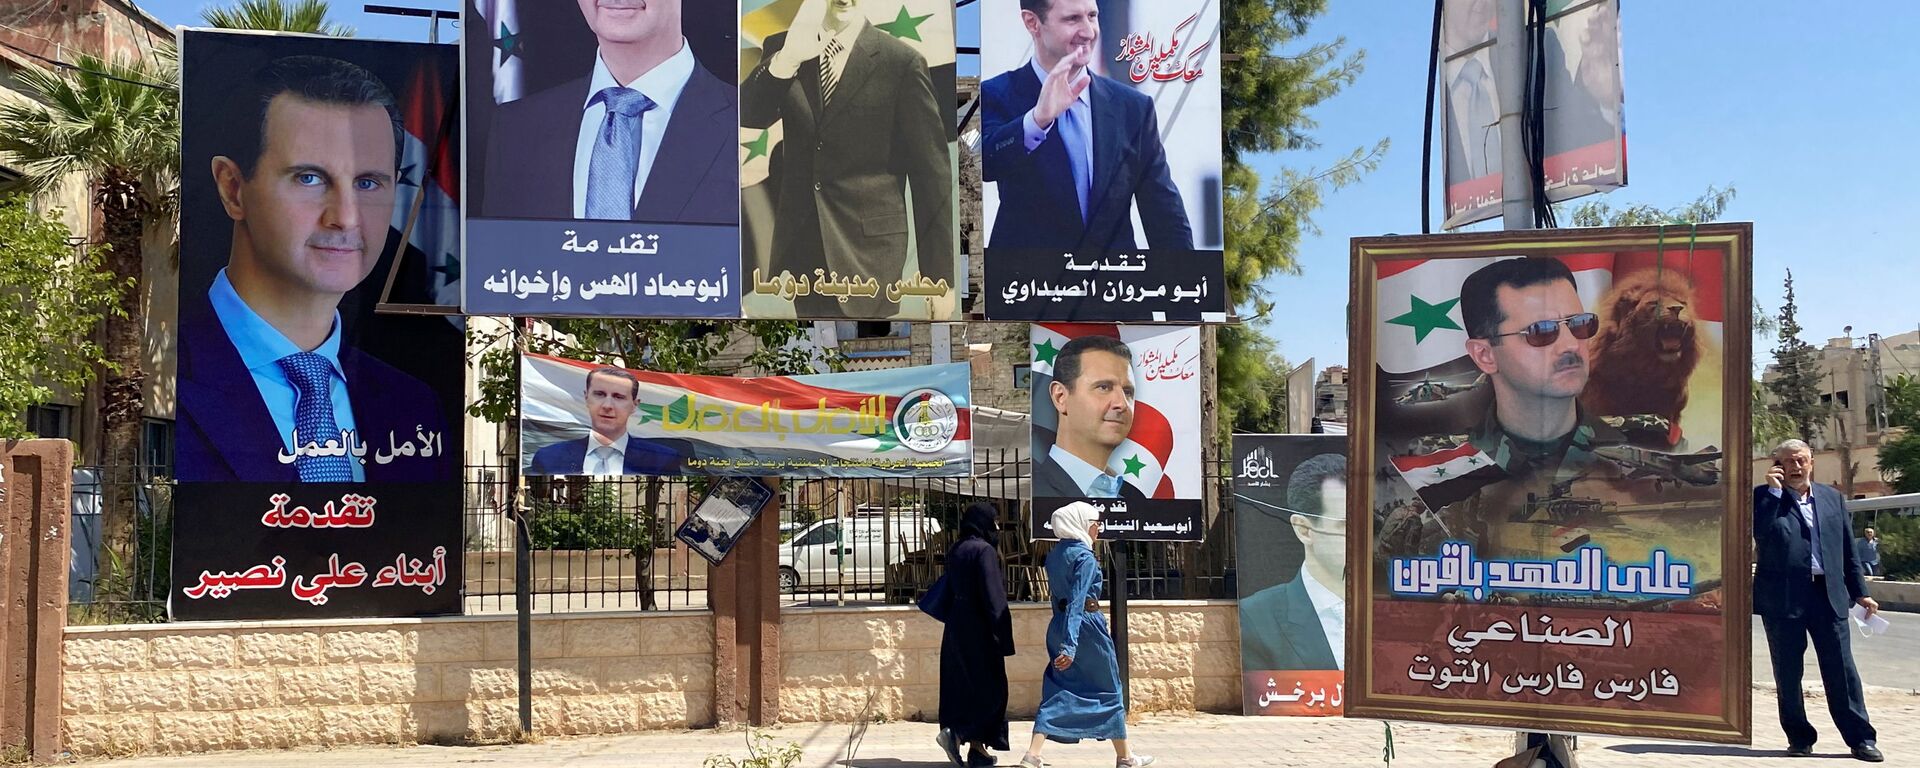 Женщины проходят возле плакатов с изображением президента Сирии Башара аль-Асада во время президентских выборов - Sputnik Армения, 1920, 22.12.2021